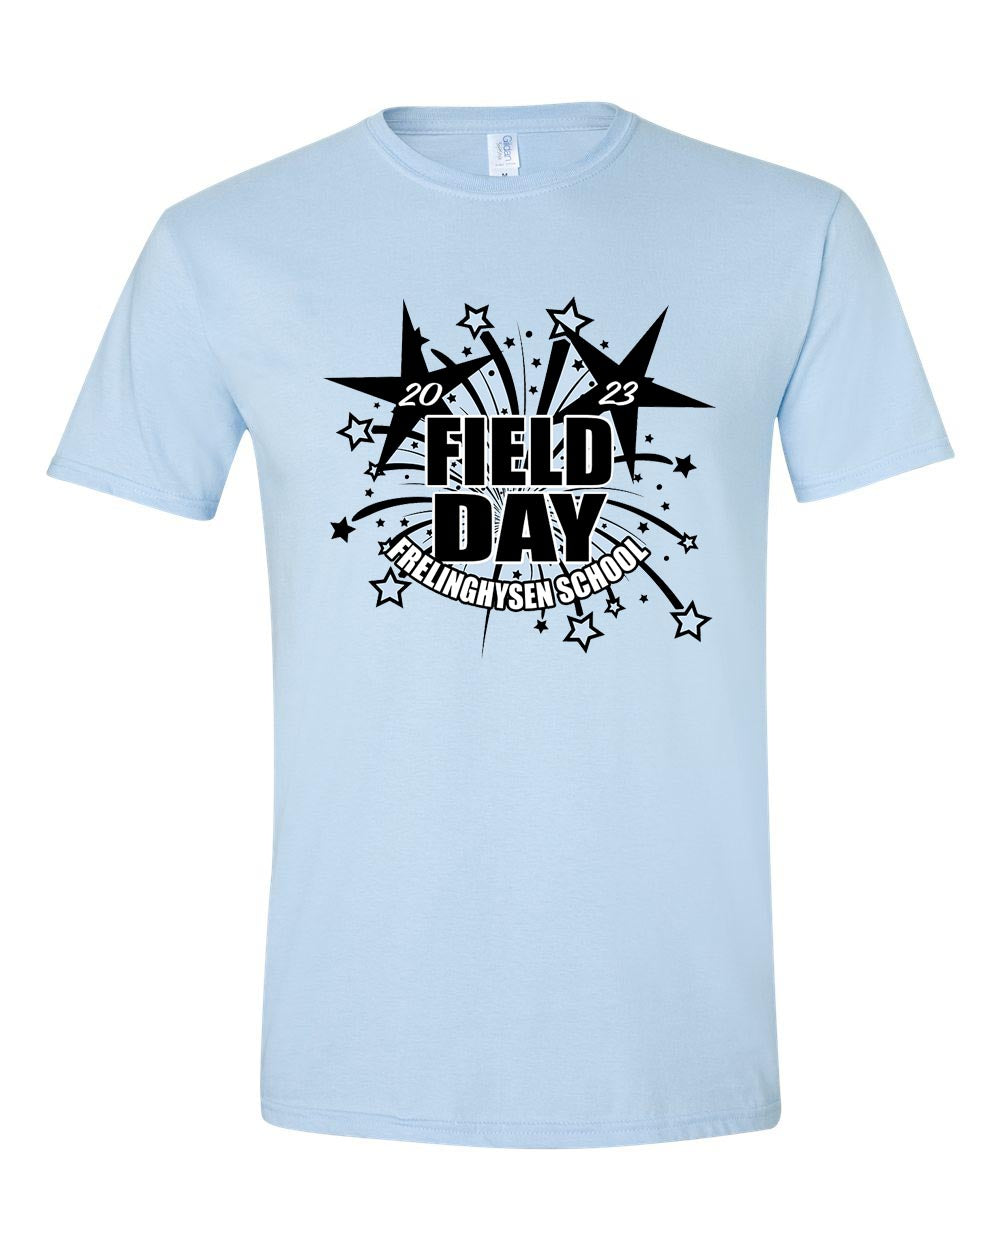 Field Day t-shirt Design 1